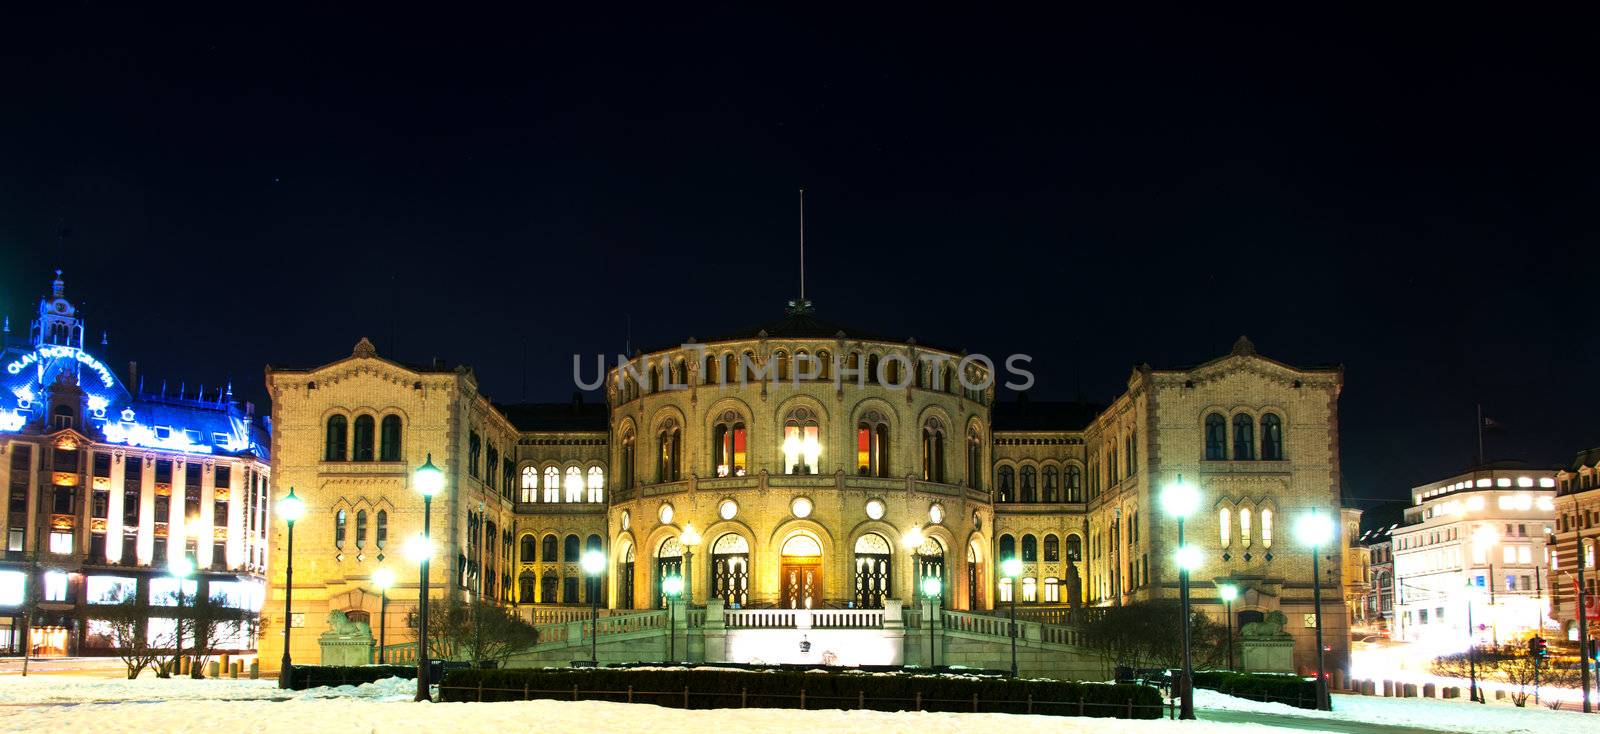 Stortinget at night by Nanisimova